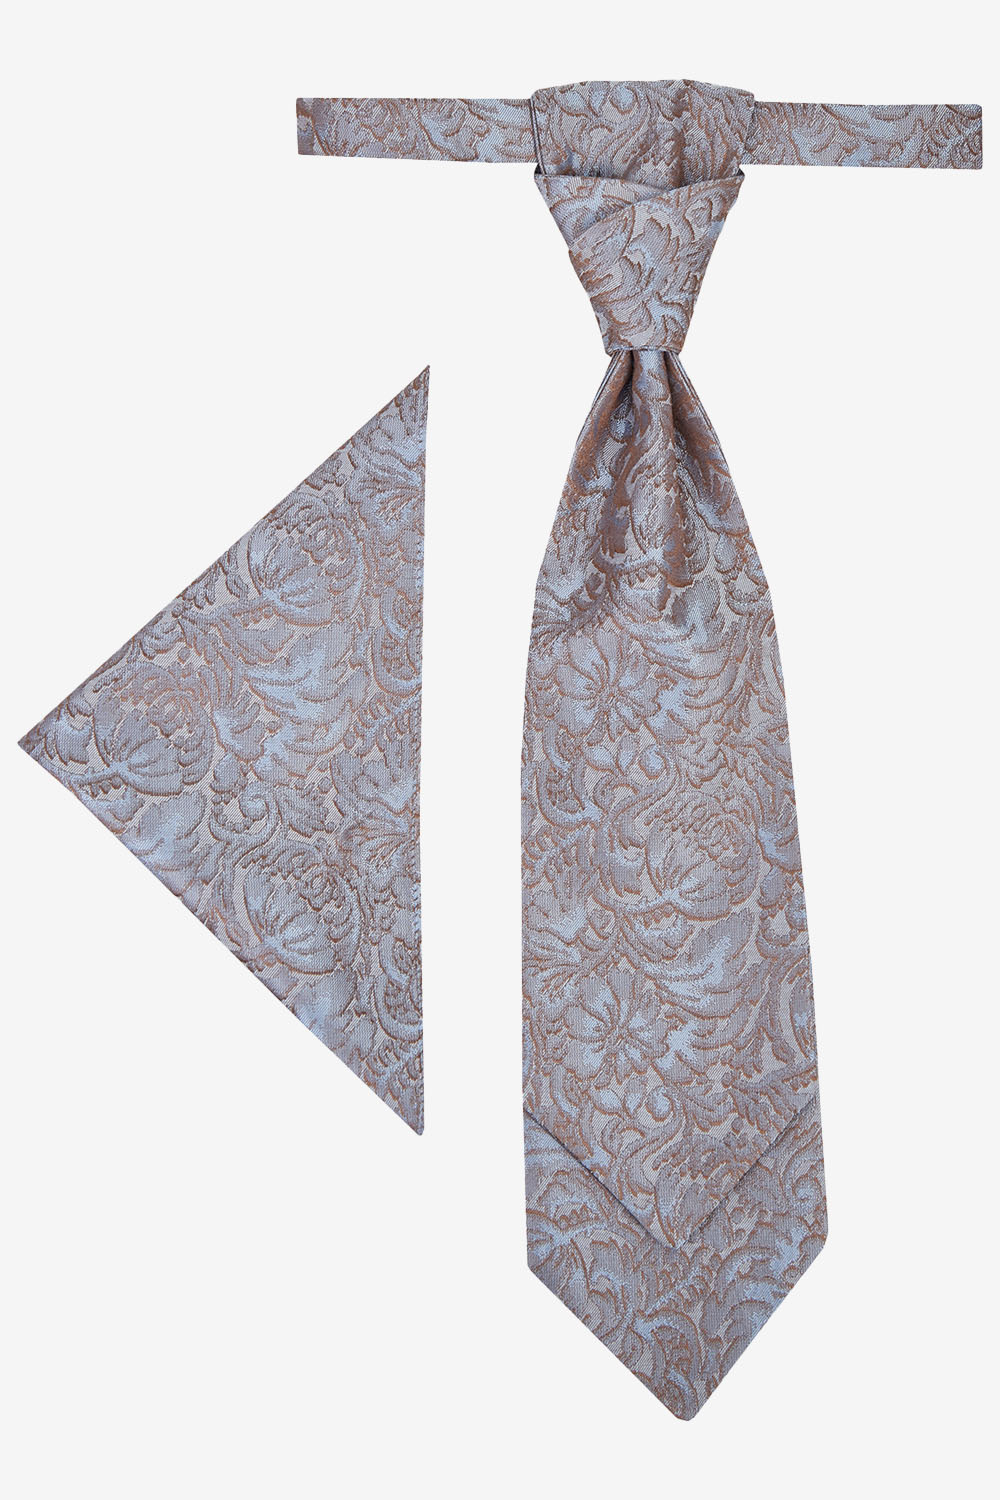 WILVORST antikarany francia nyakkendő díszzsebkendővel 797222-36